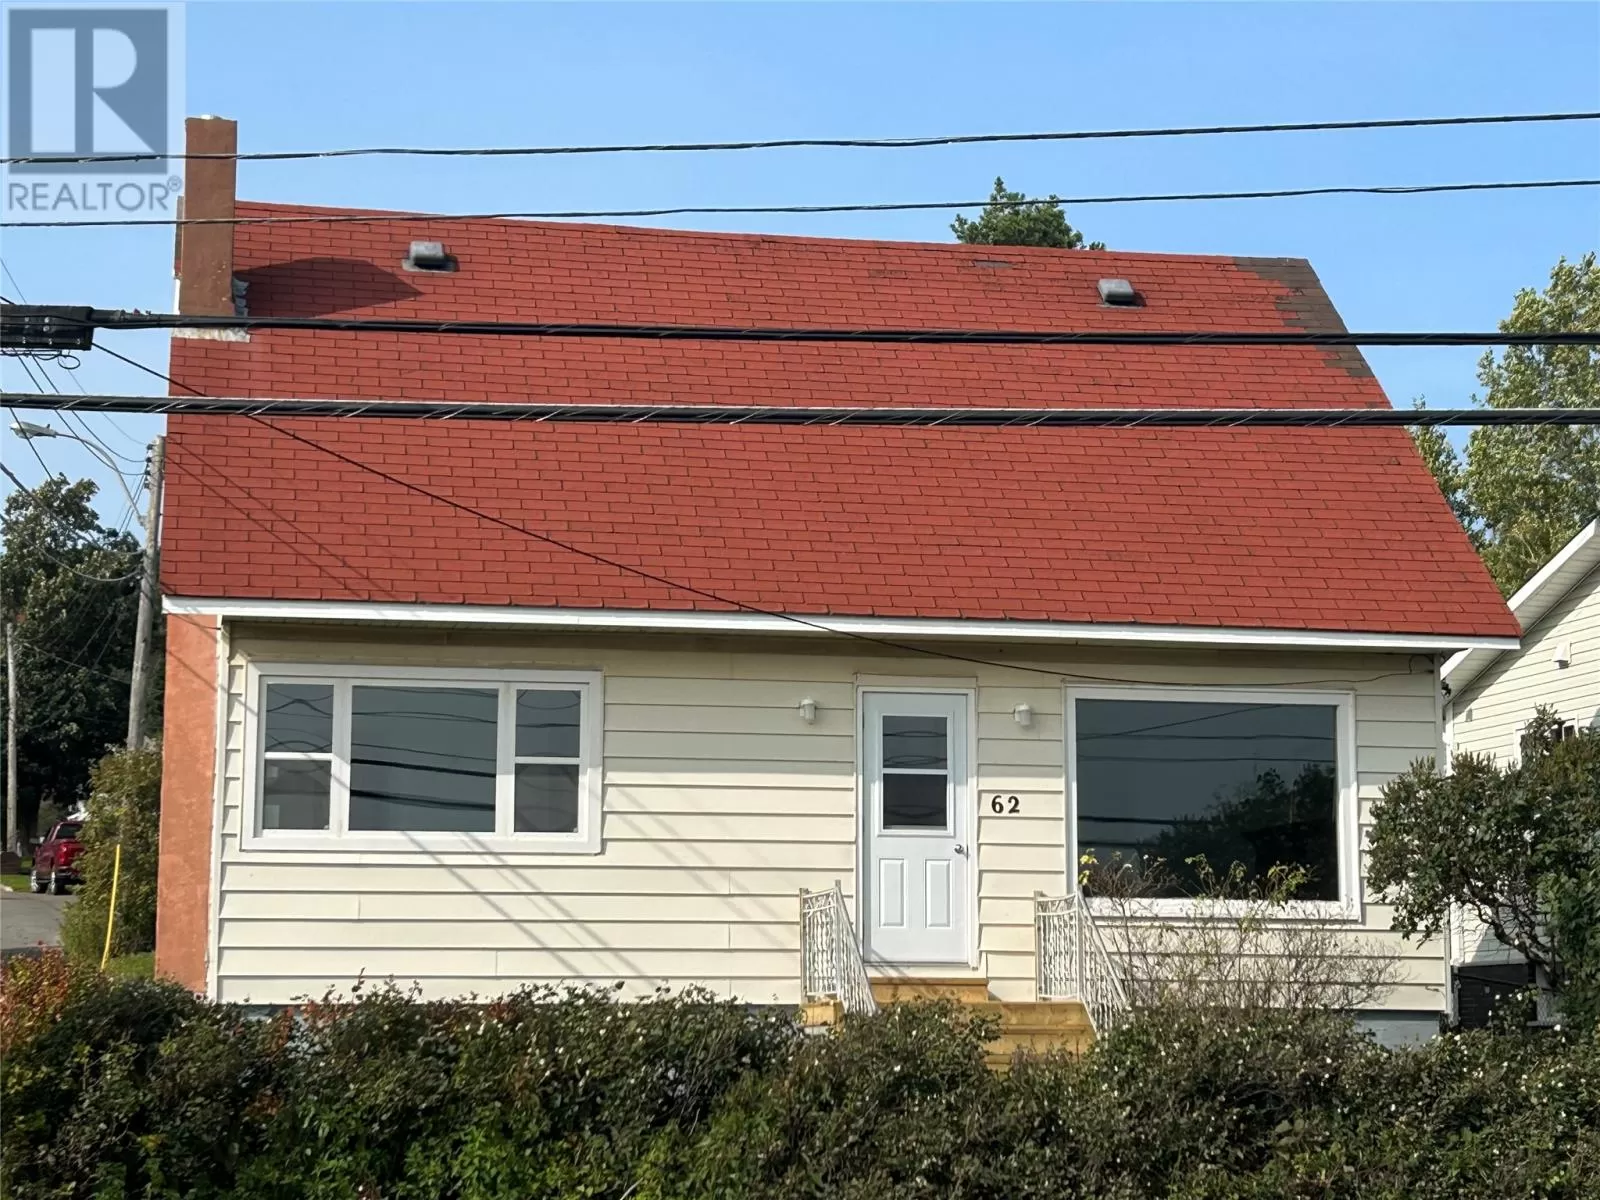 House for rent: 62 Main Street, Lewisporte, Newfoundland & Labrador A0G 3A0